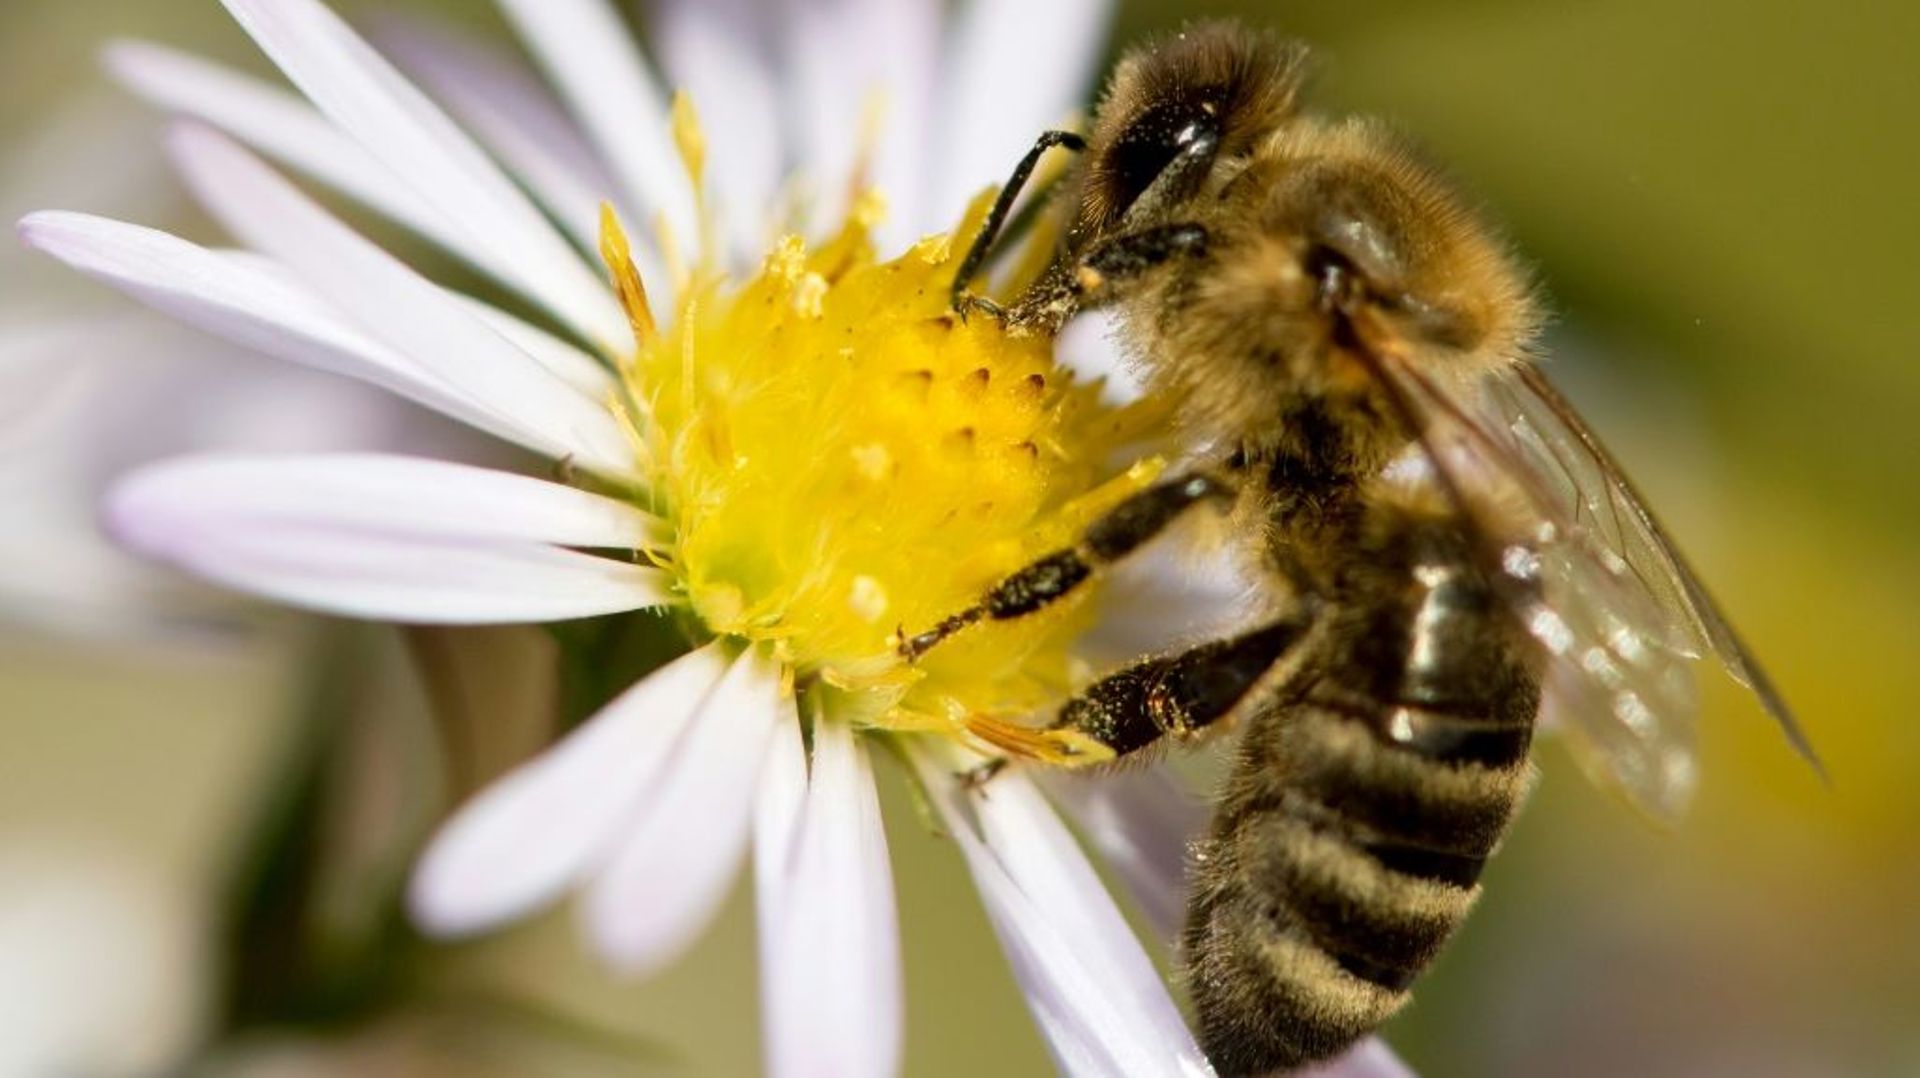 L'association Générations Futures a bataillé à Nice pour obtenir du tribunal administratif le gel de l'autorisation de vente de deux nouveaux pesticides en raison des risques pour la santé des abeilles